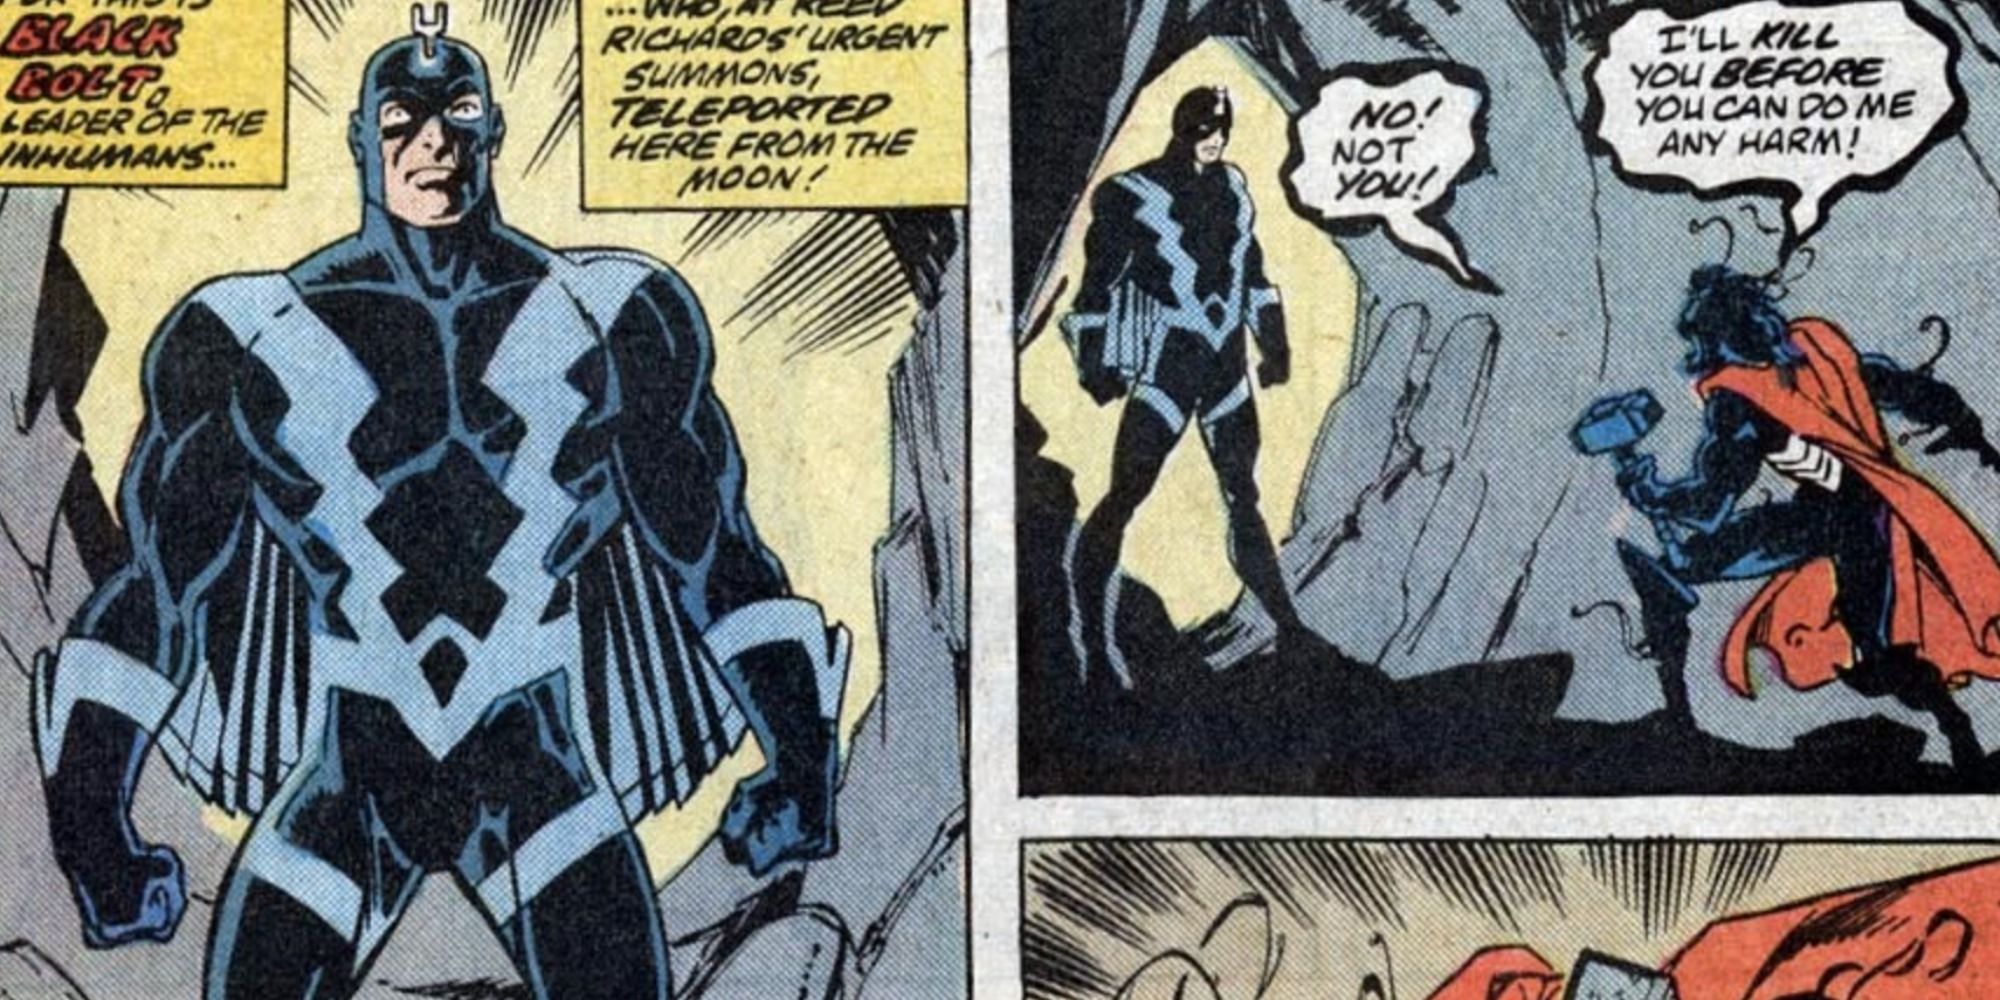 Blsck Bolt confronts Venom in Marvel Comics.